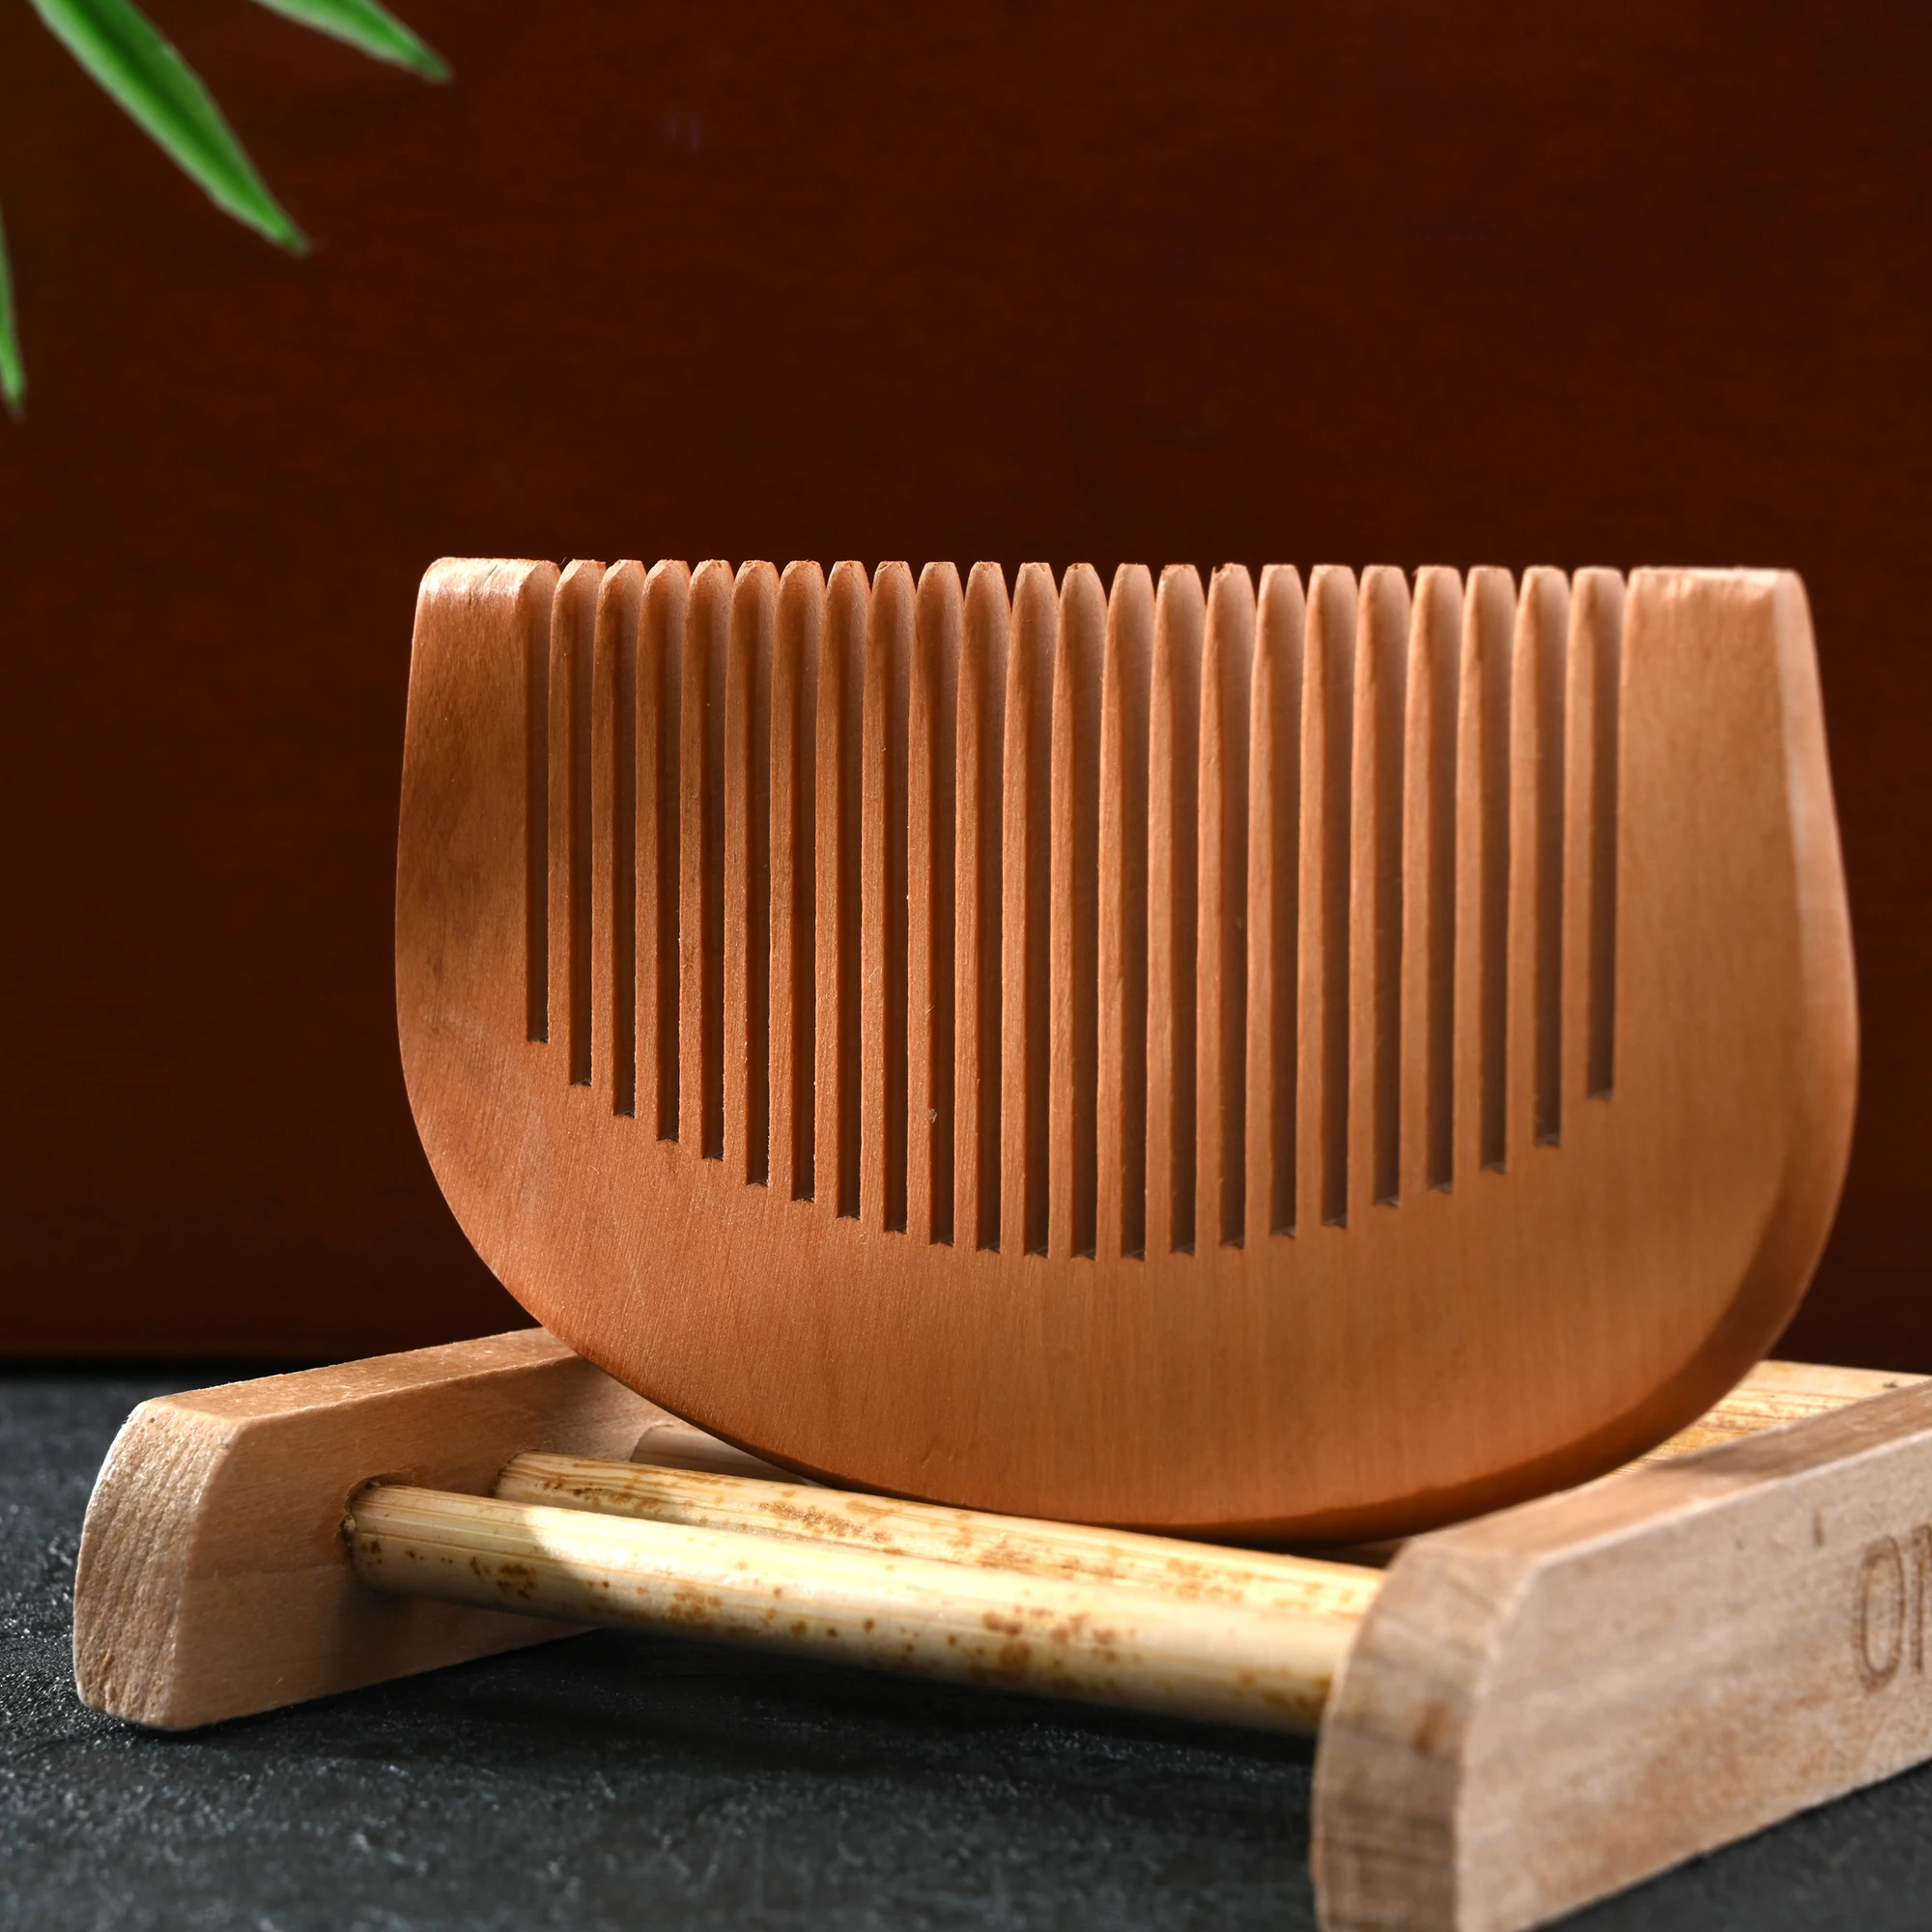 Trendy pente de madeira para o cabelo, gravado, natural, pêssego, madeira, anti-estático, barba, ferramenta, acessórios